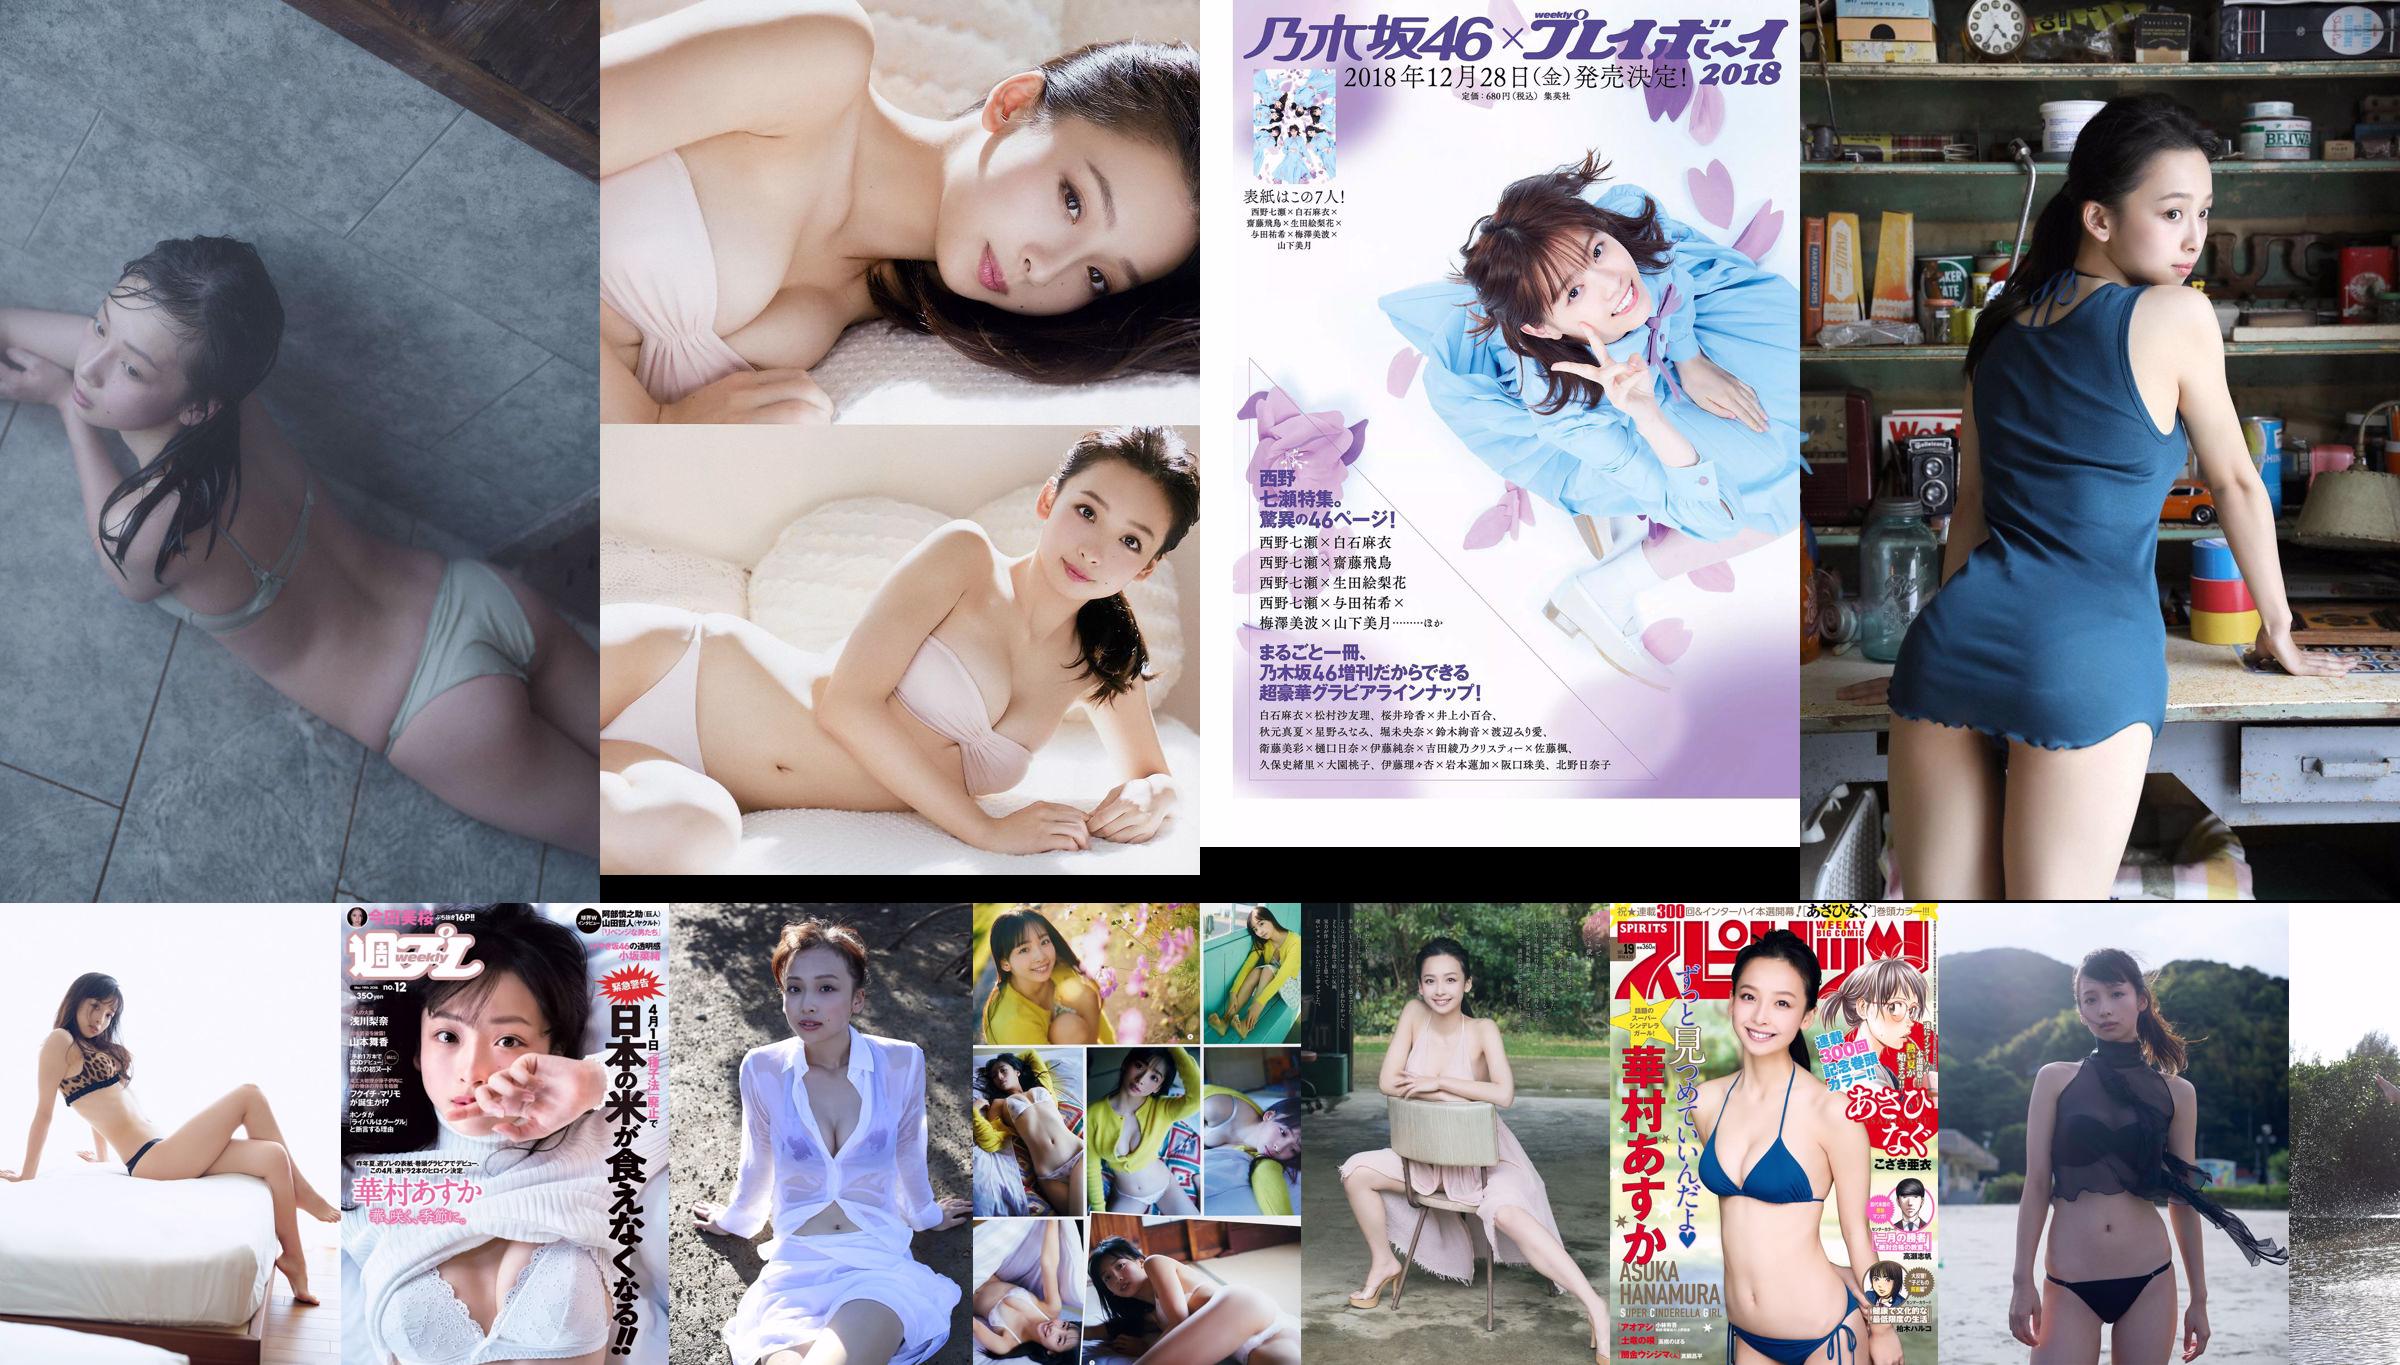 Asuka Hanamura Rina Asakawa Maika Yamamoto Mio Imada Nao Kosaka ☆ HOSHINO [Weekly Playboy] Foto No.12 2018 No.2799c5 Halaman 2